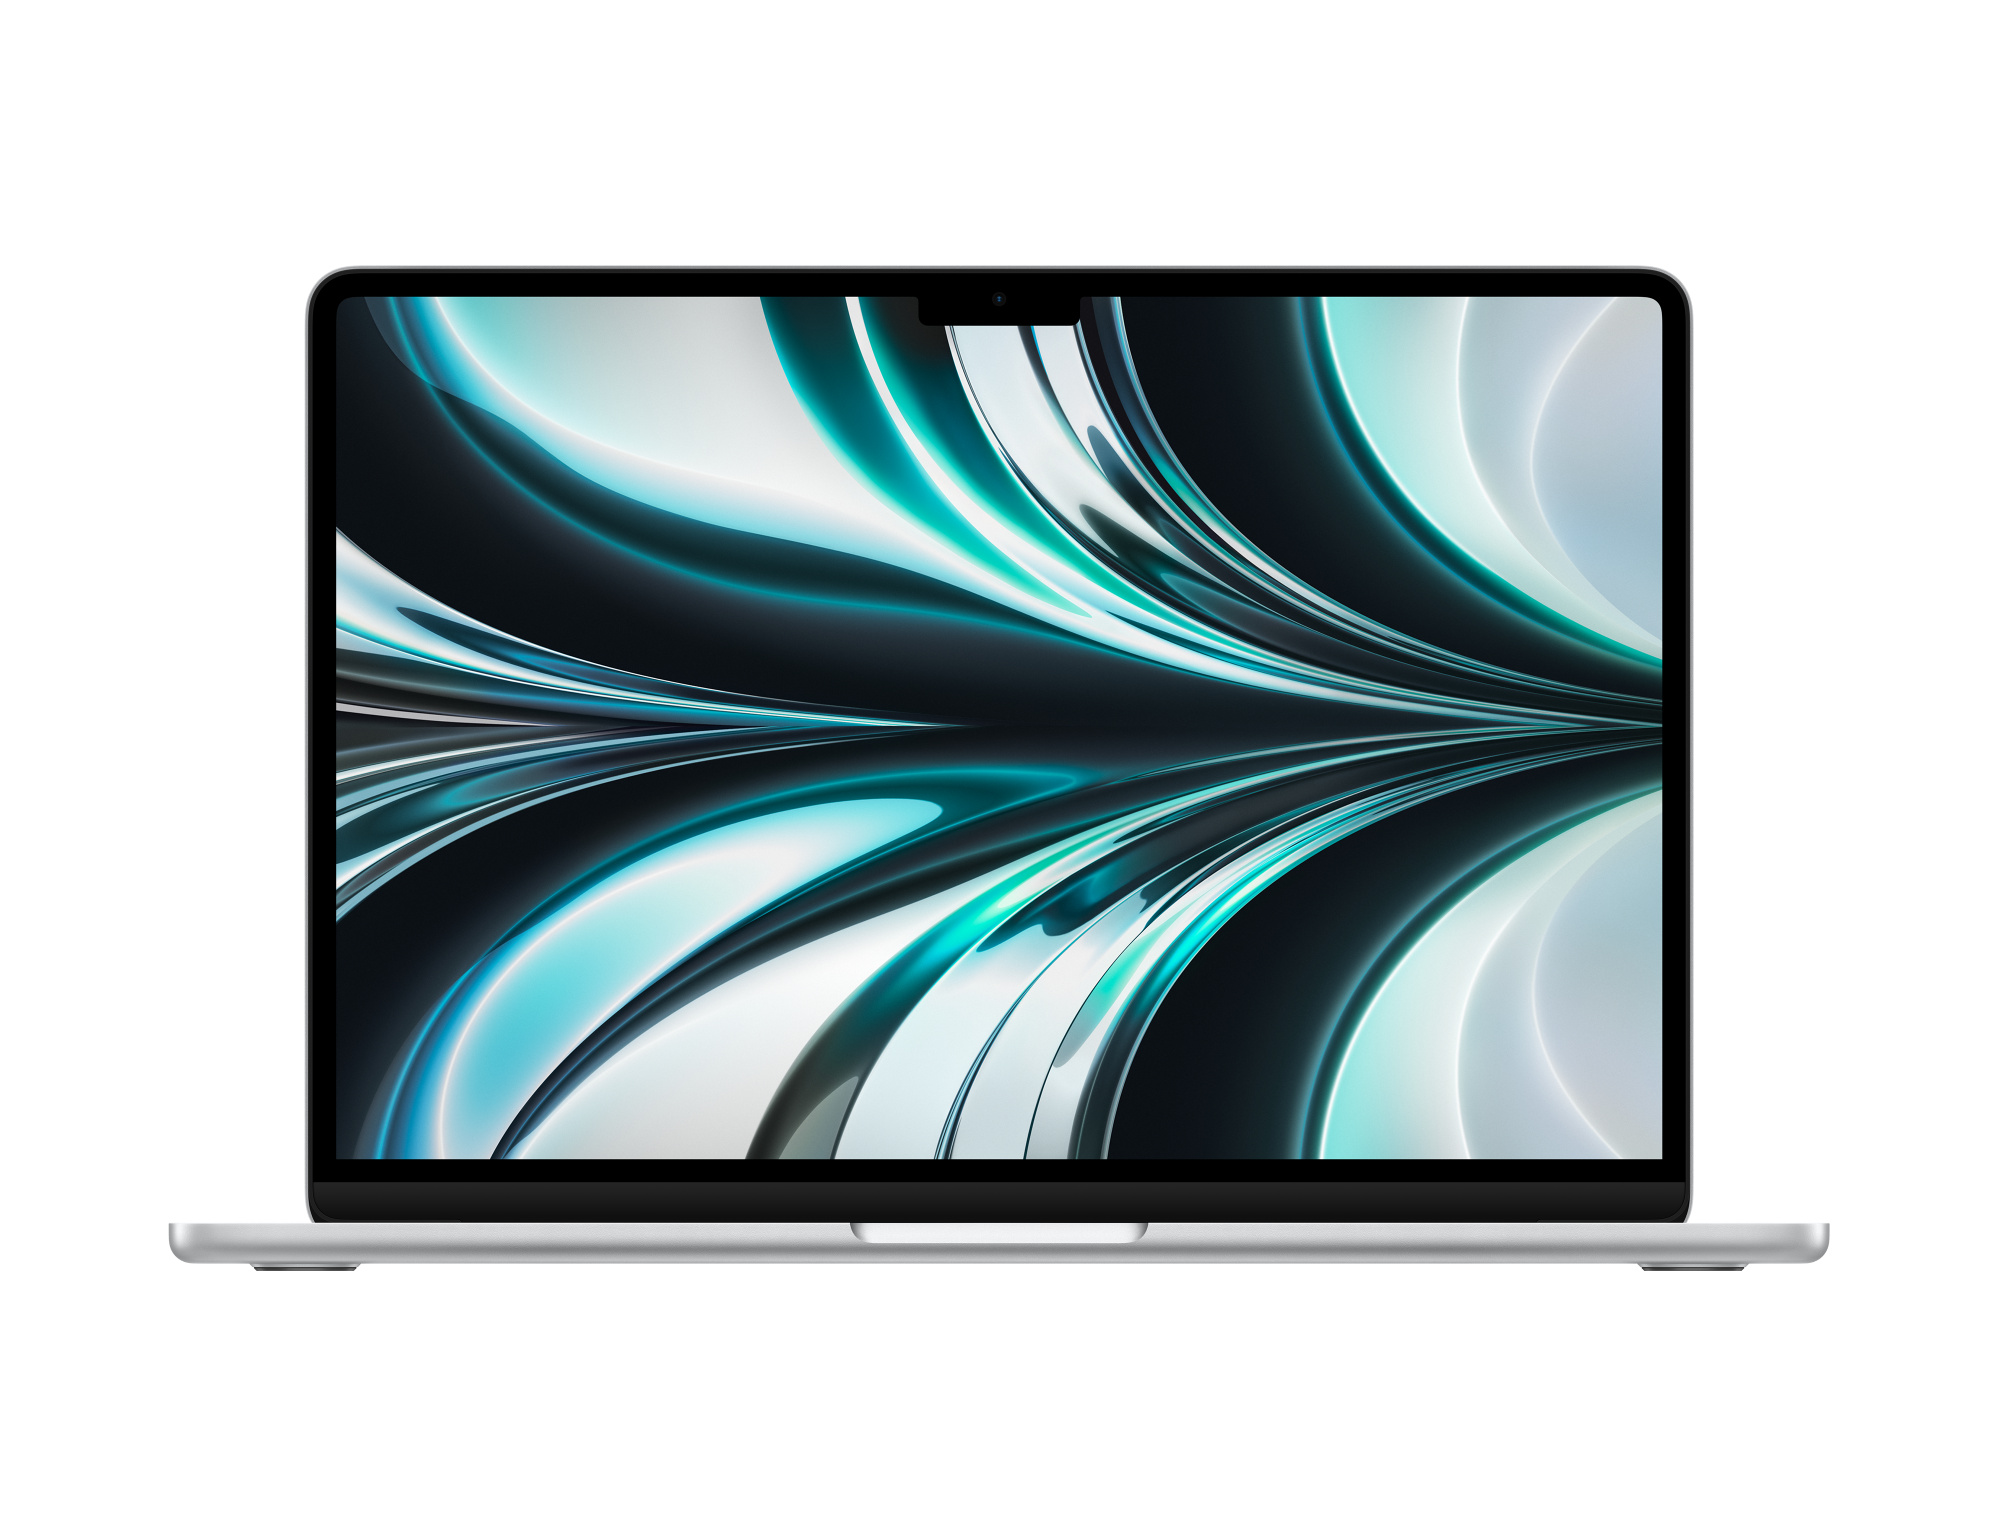 13-inch MacBook Air: Apple M2 chip with 8 core CPU, 10 core GPU, 16 core Neural Engine, 512GB